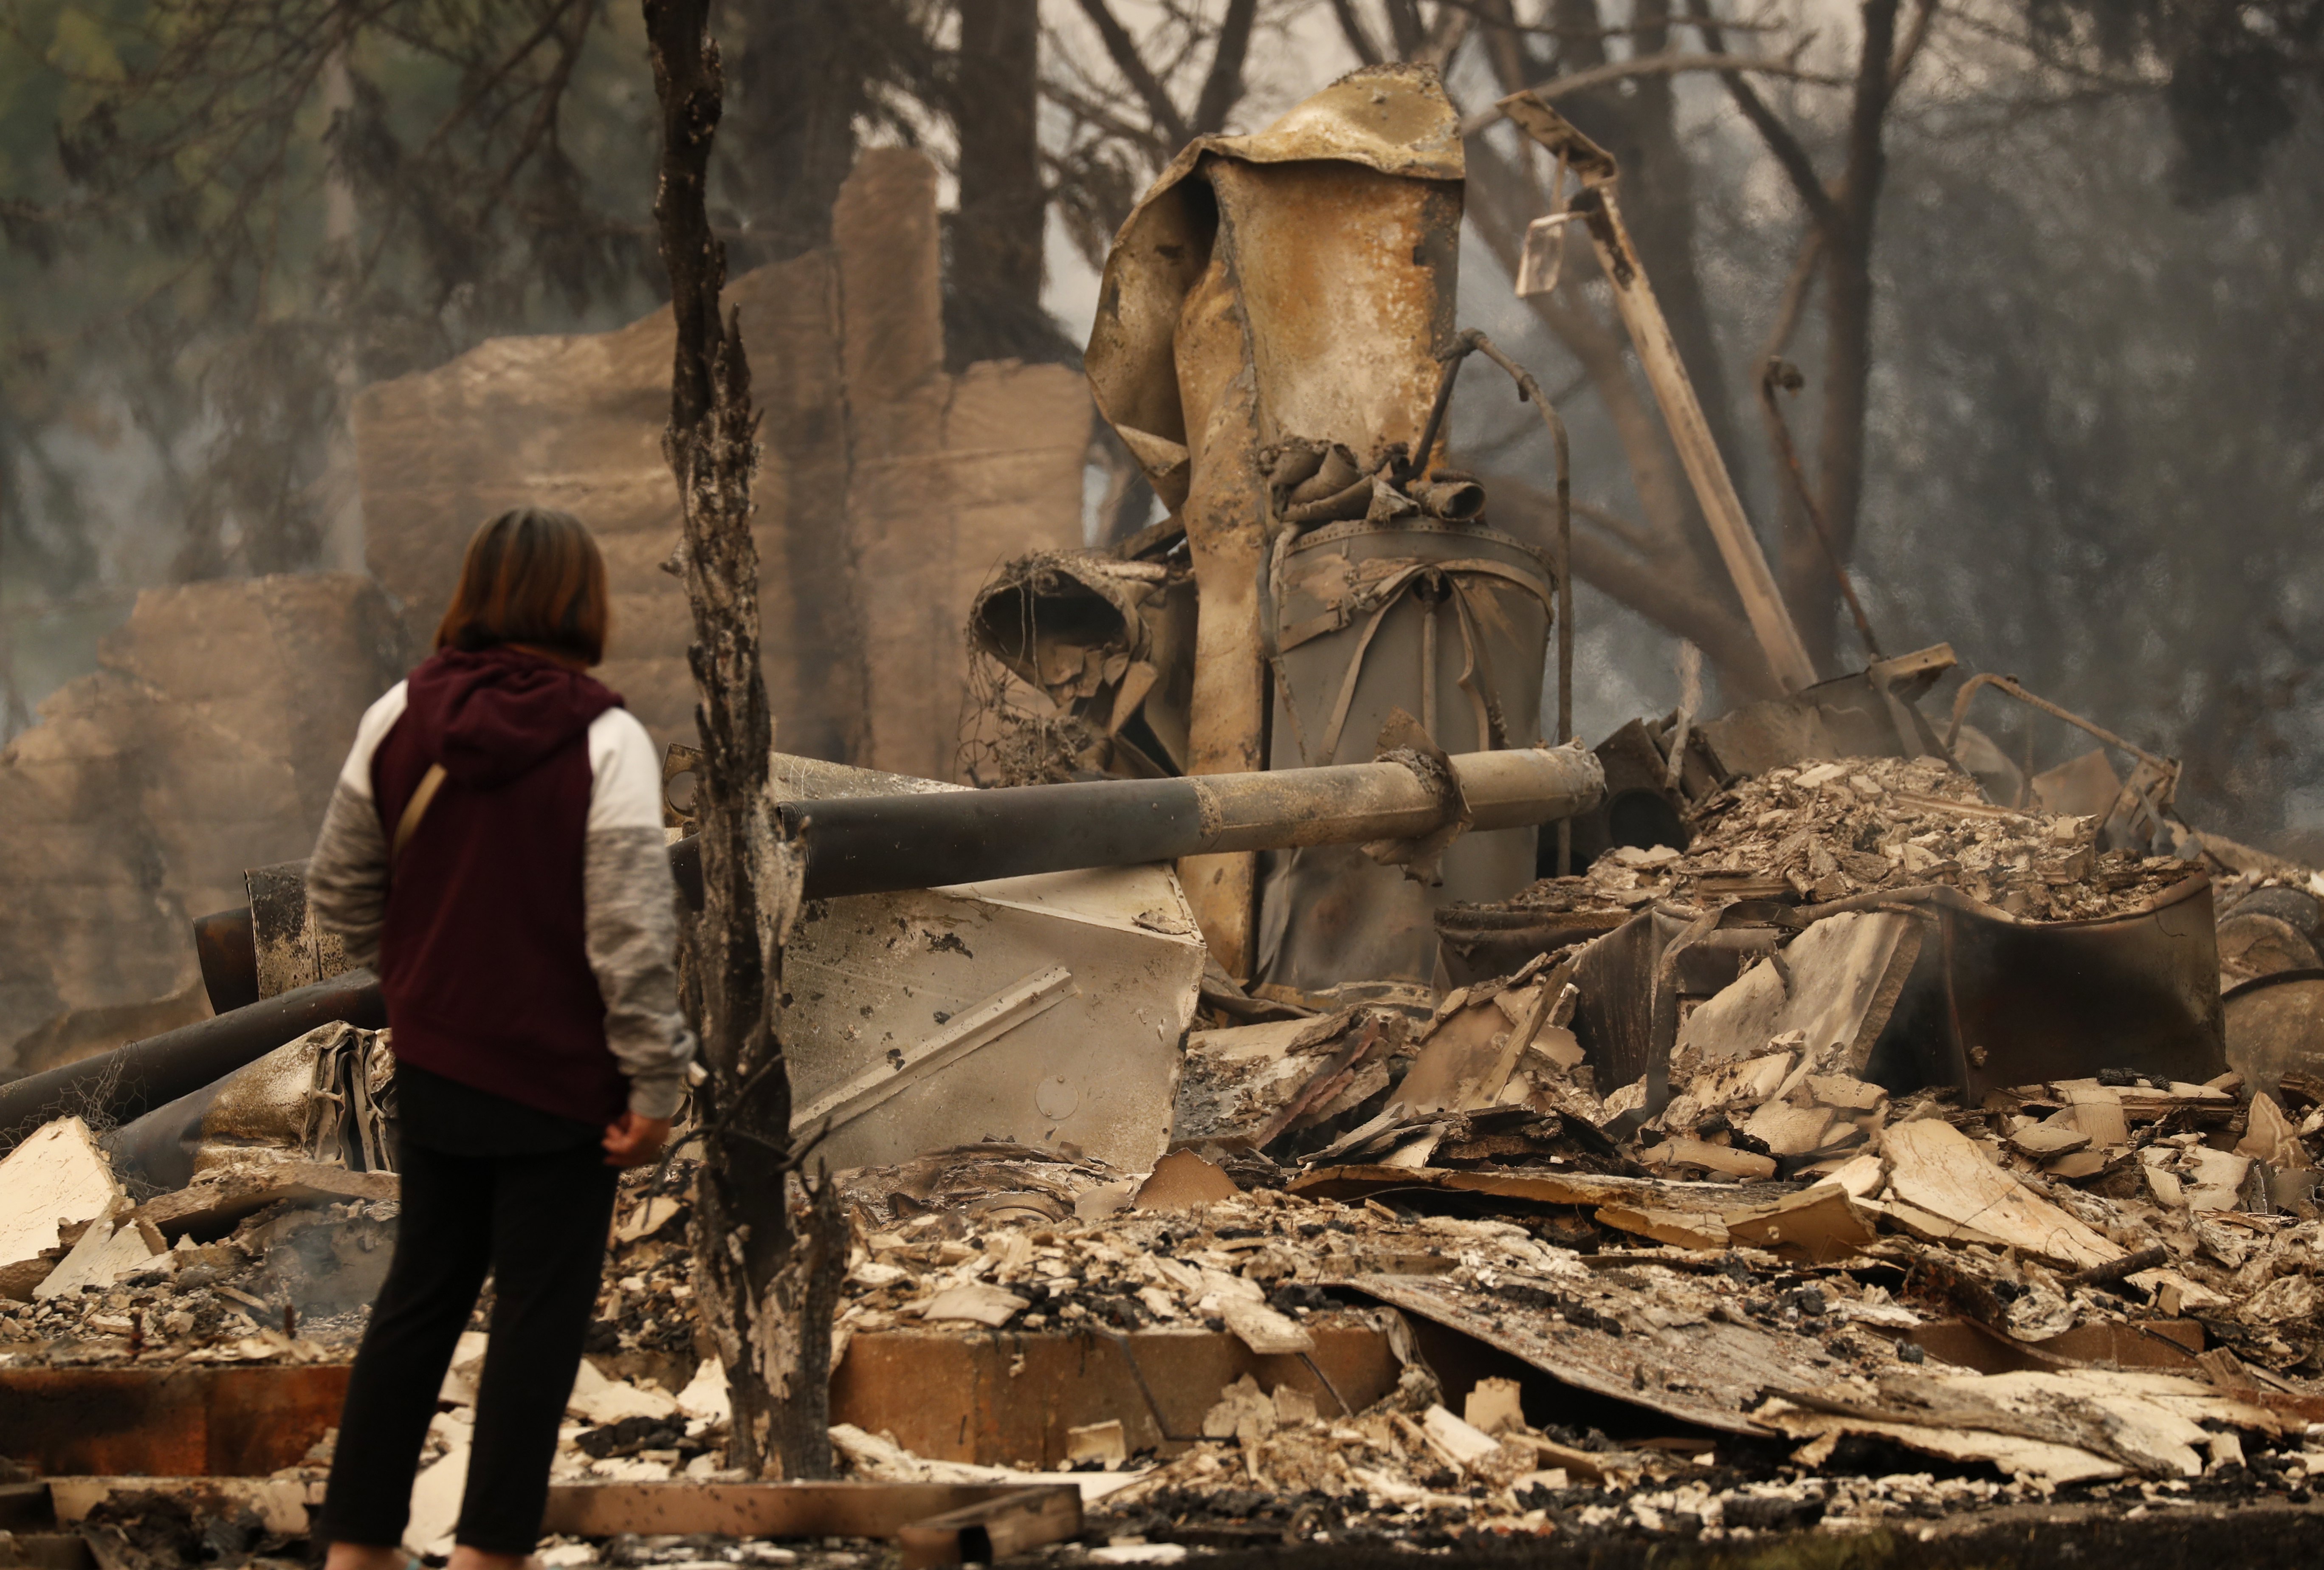 Поне 10 души загинаха, стотици са ранени, а над 20 000 се евакуираха след като пожари обхванаха повече от 230 квадратни километра в долините Напа и Сонома в Калифорния. Огънят изпепели 1500 къщи и търговски обекти. Много от хората бяха принудени да избягат в средата на нощта от домовете си и нямат нищо освен дрехите, които носят.
В гасенето на пожарите са мобилизирани Националната гвардия и Военната полиция.